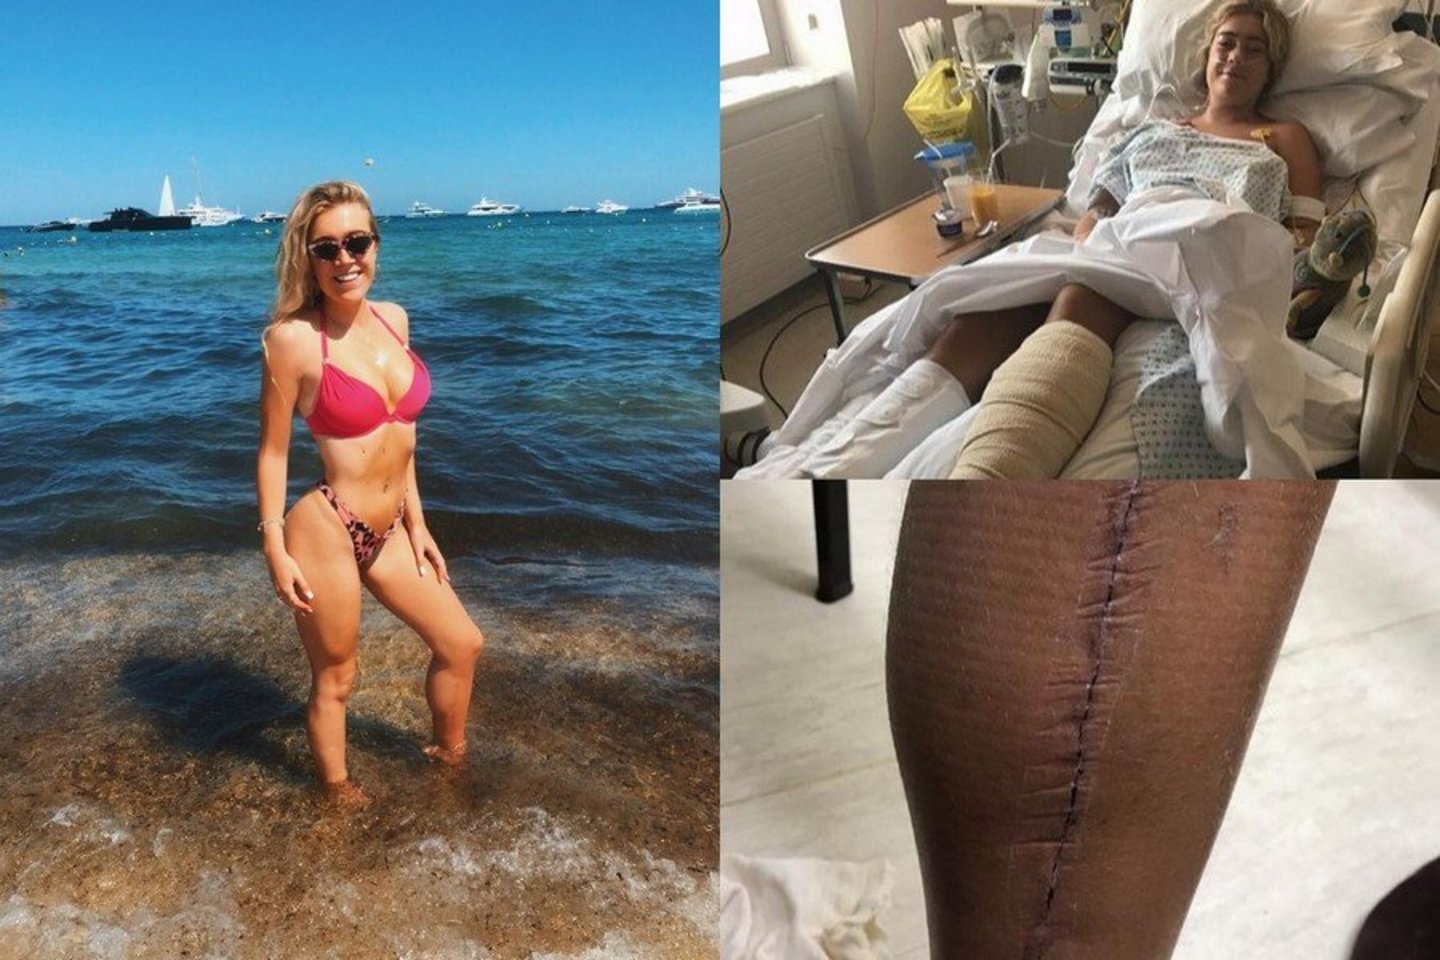  Tai, kad merginos koja buvo išgelbėta ir ji išgyveno, gydytojai vadina stebuklu.<br> Instagramo nuotr.